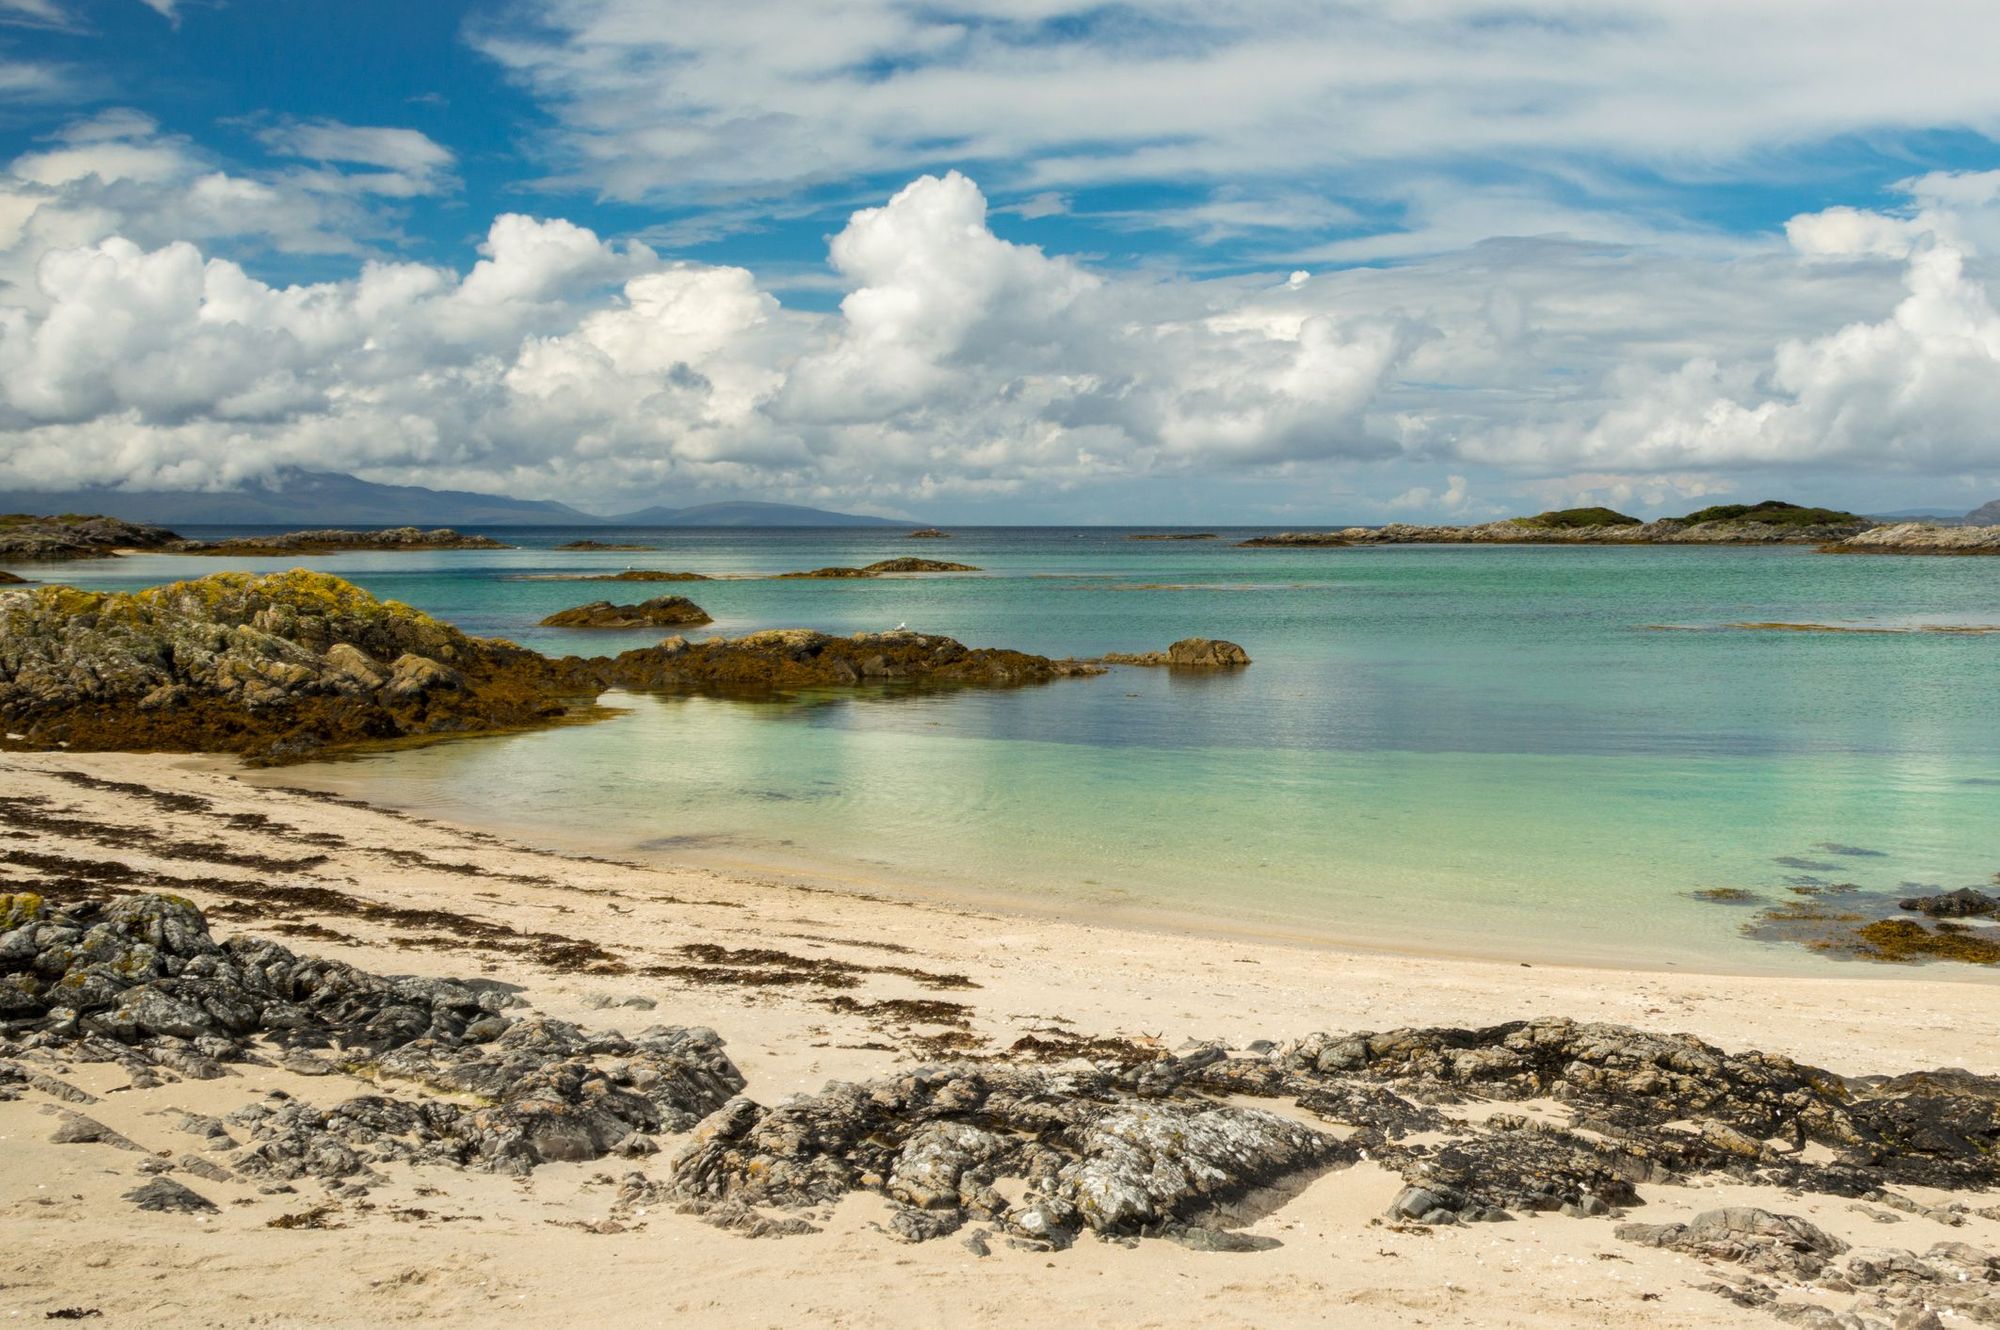 An unspoilt beach on Scotland's West Coast